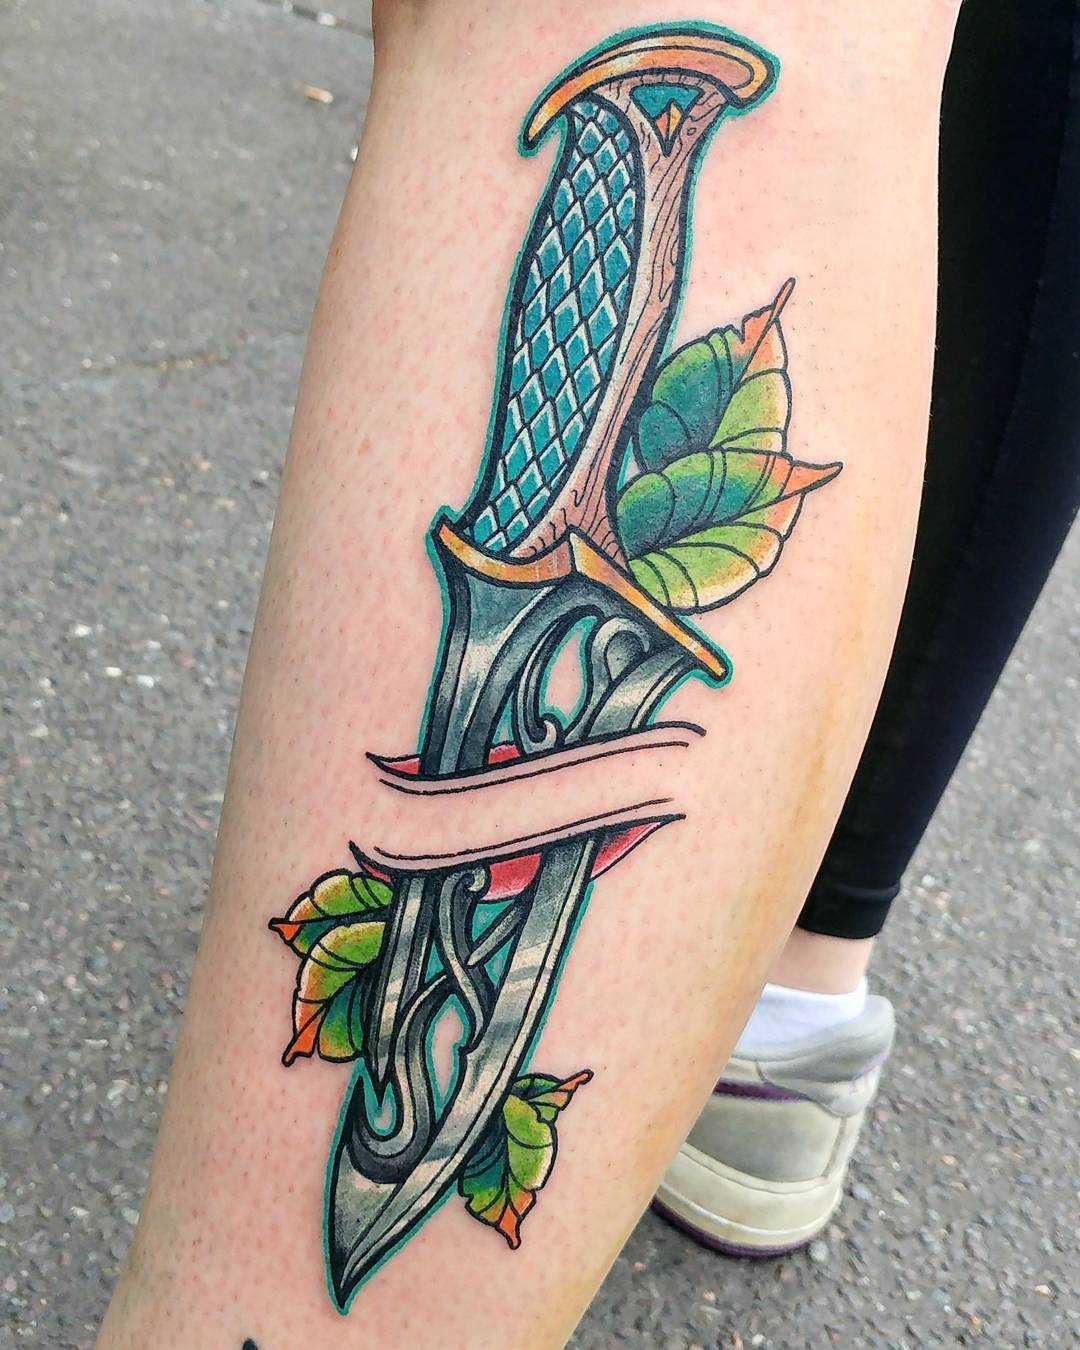 A tatuagem de uma faca sobre a perna da menina